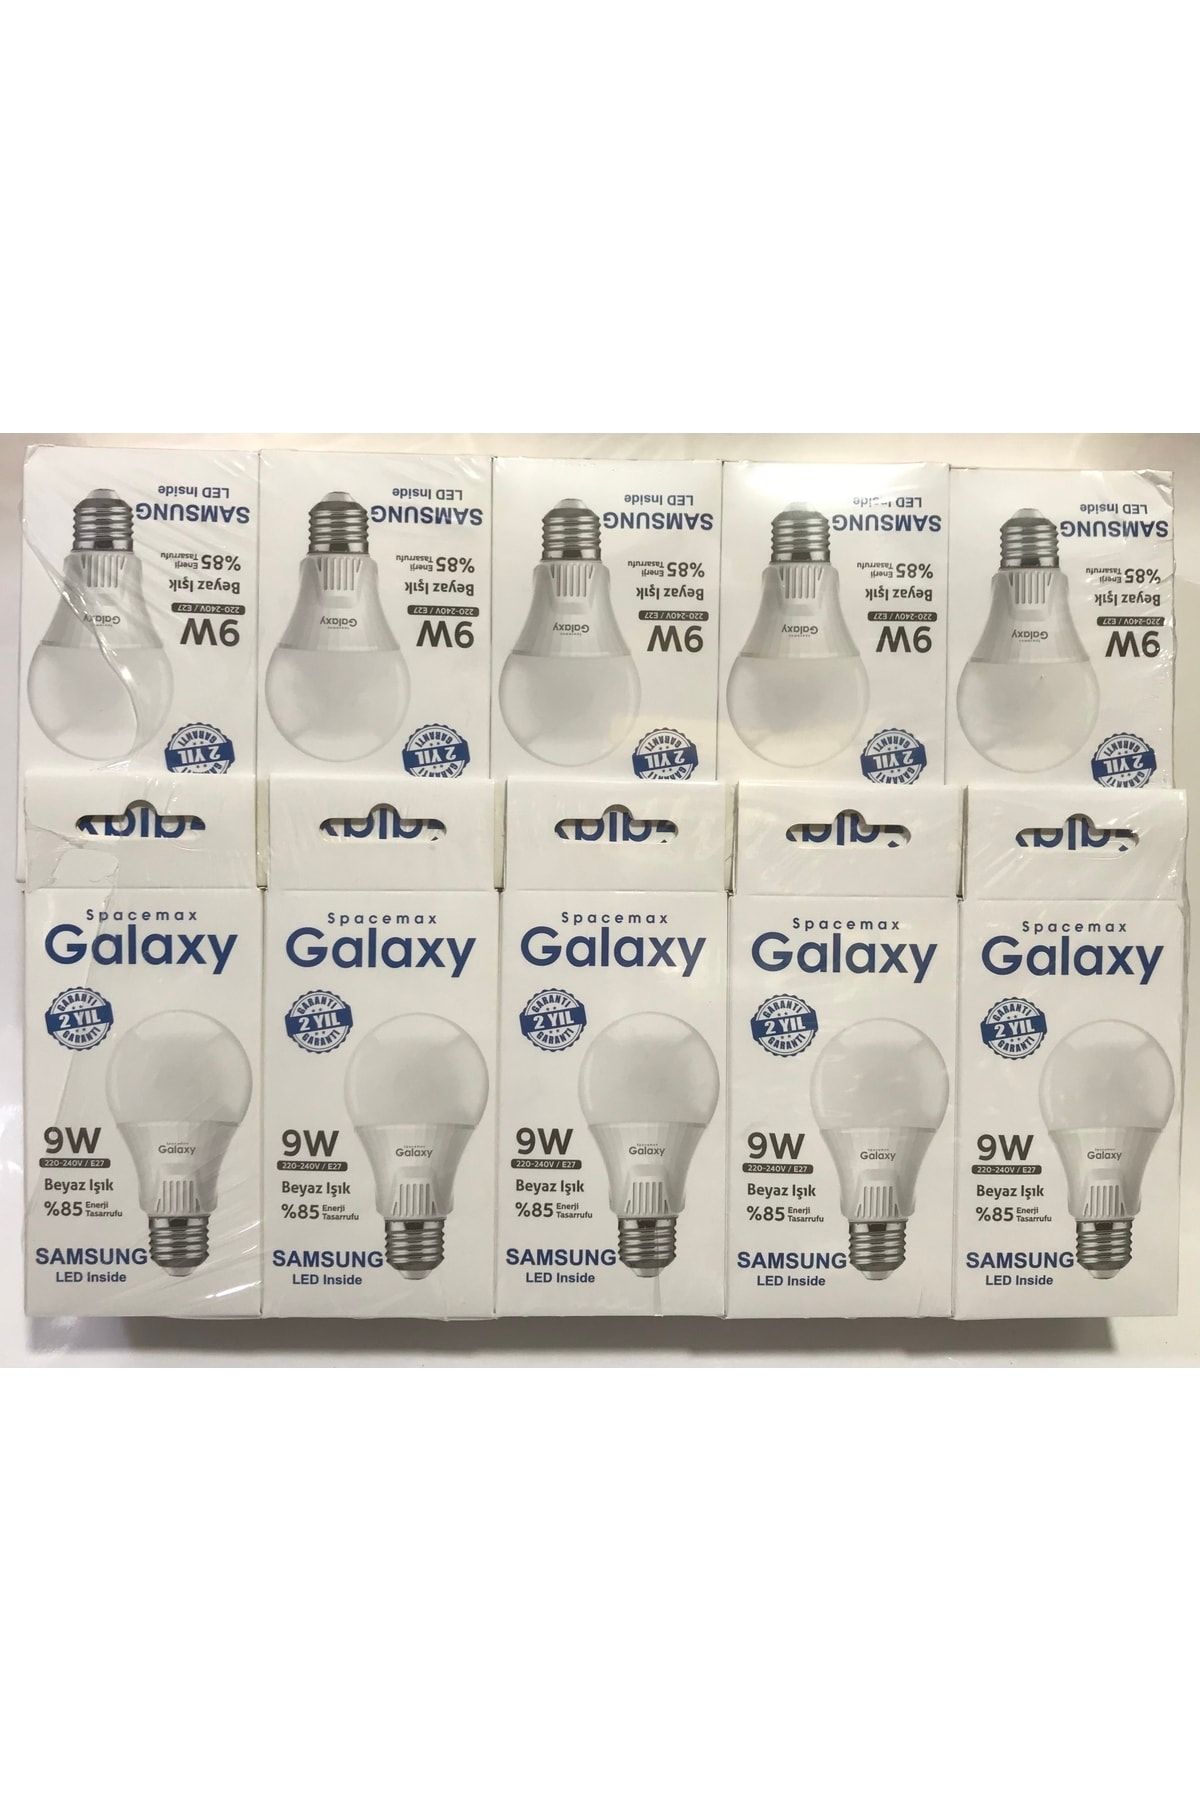 Samsung Spacemax Galaxy 10 Adet 9w Beyaz Işık Led Ampul